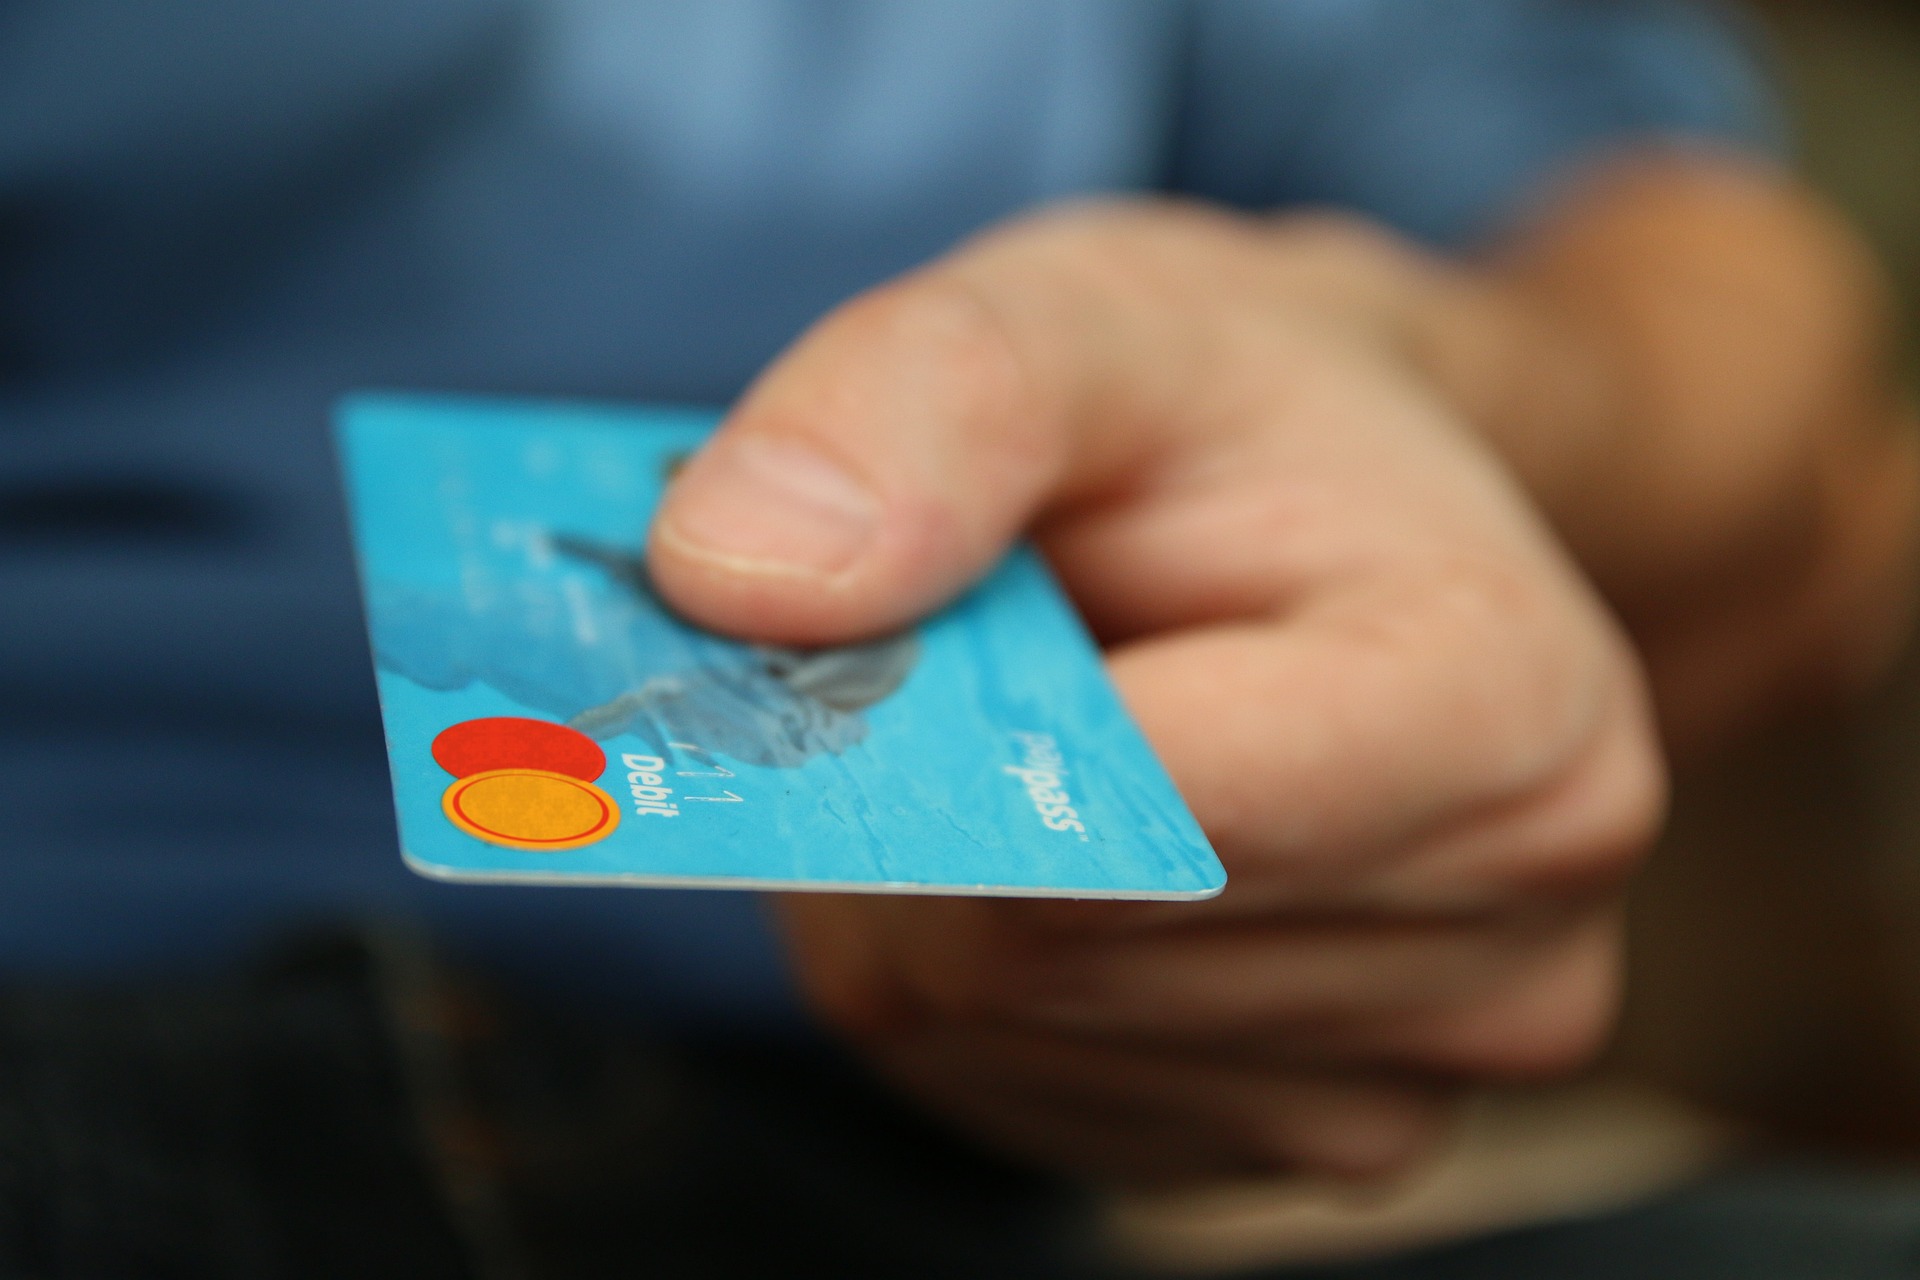 Condusef advierte sobre nuevo fraude en tarjetas de crédito y préstamos